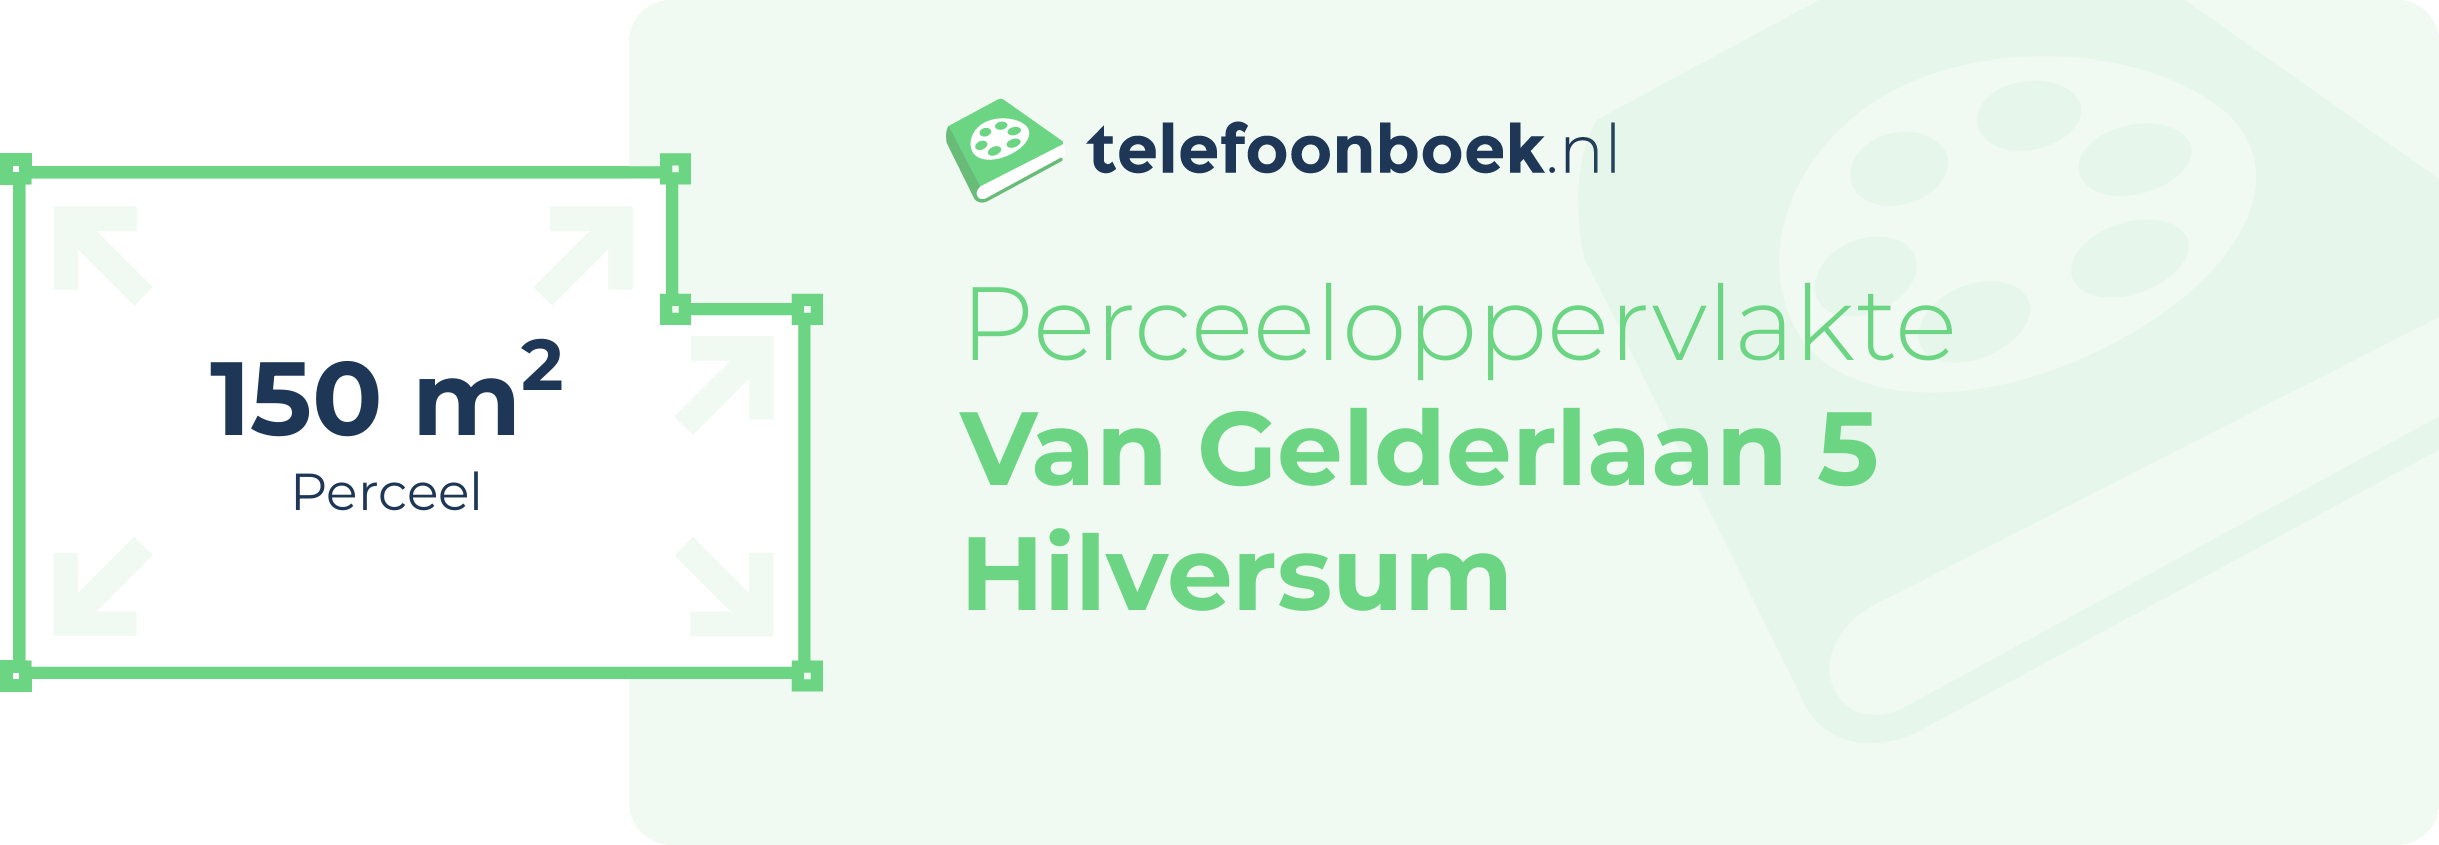 Perceeloppervlakte Van Gelderlaan 5 Hilversum